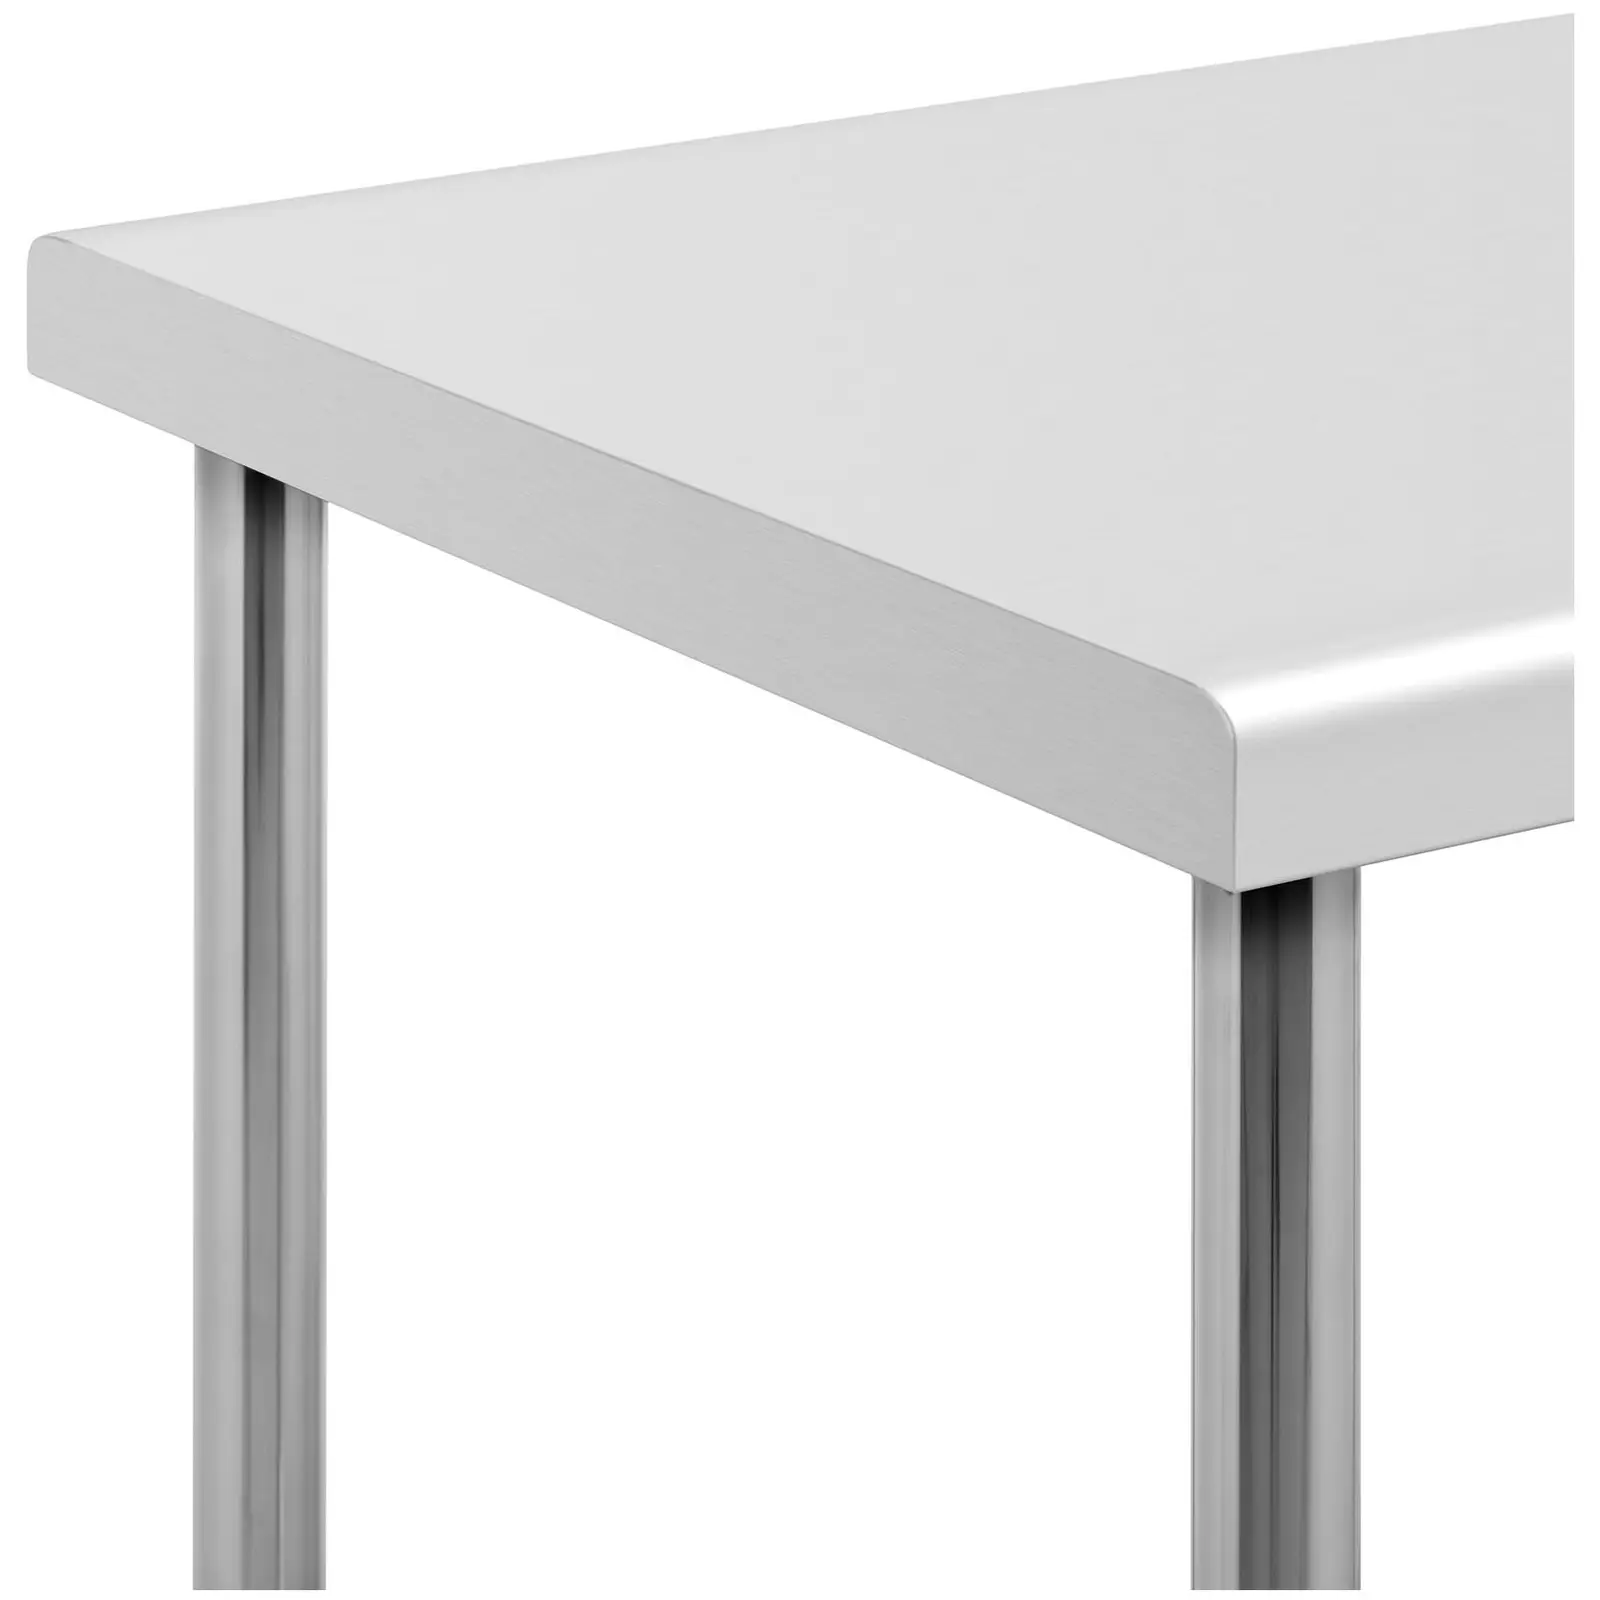 Teräspöytä- RST - 100 x 70 cm